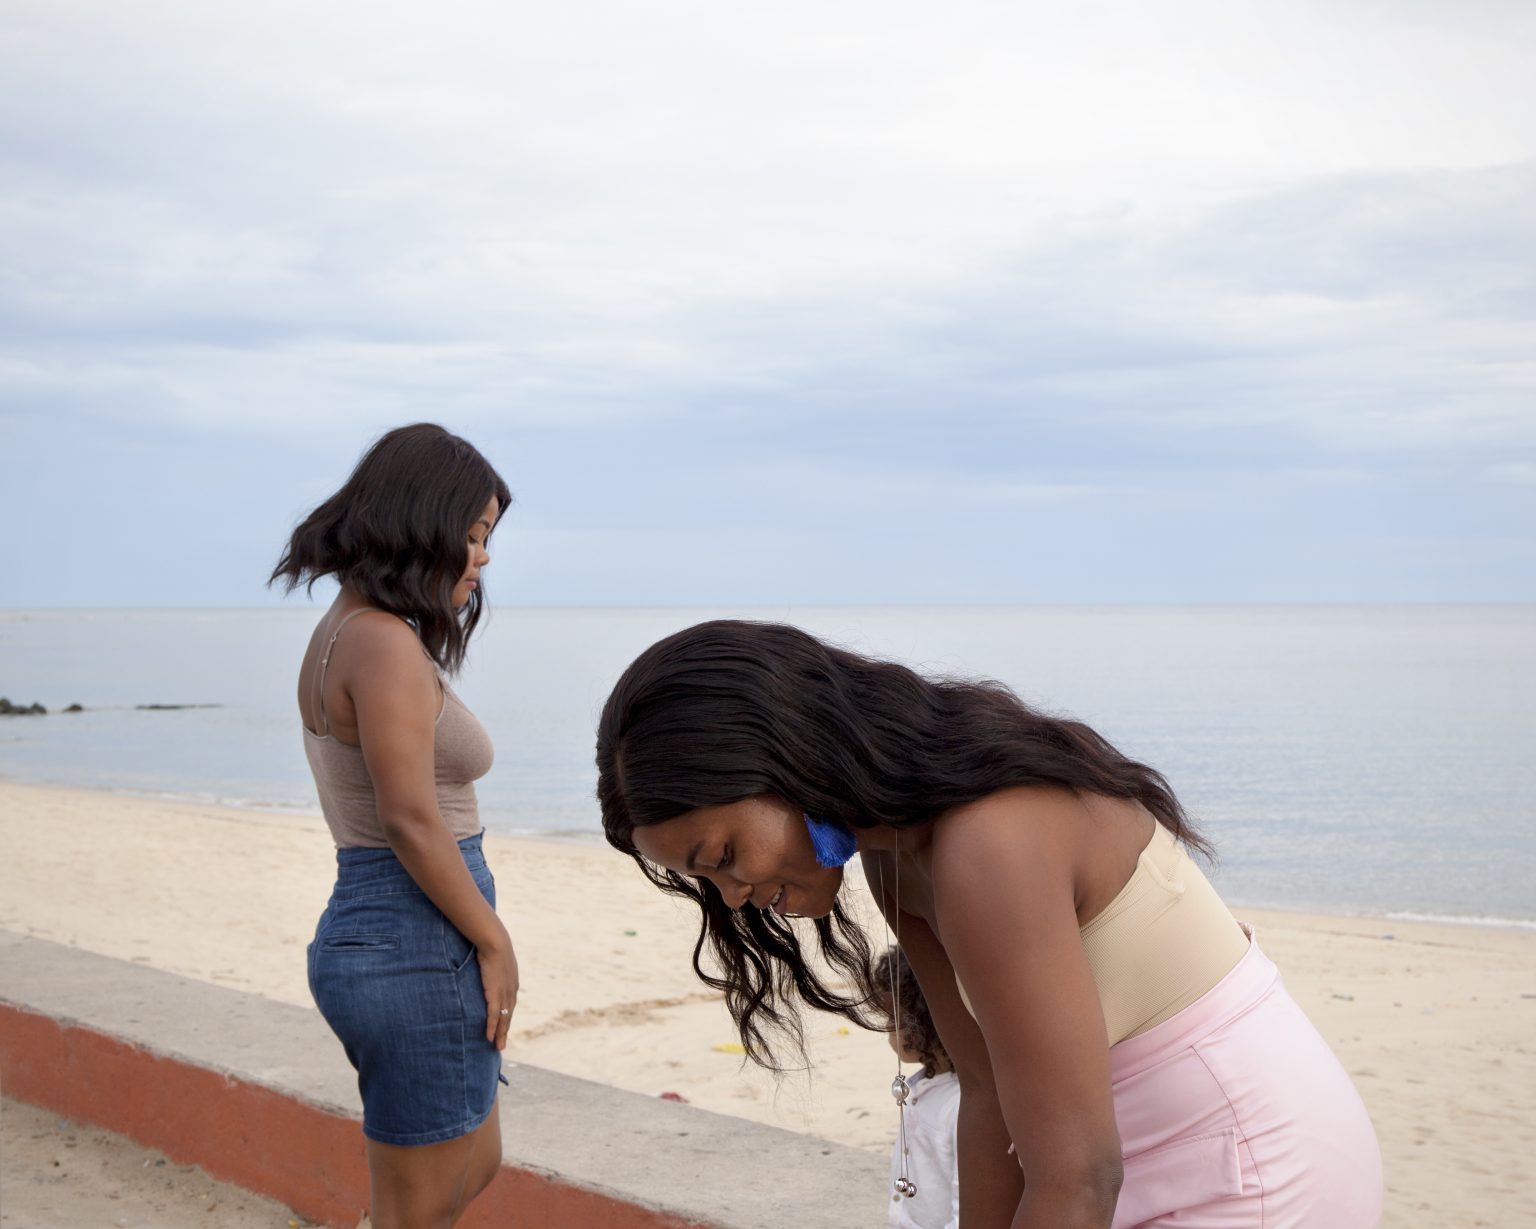 Beira (Mozambique). Two girls at the seafront in Miramar area.
><
Beira (Mozambico). Due ragazze sul lungomare nella zona di Miramar.